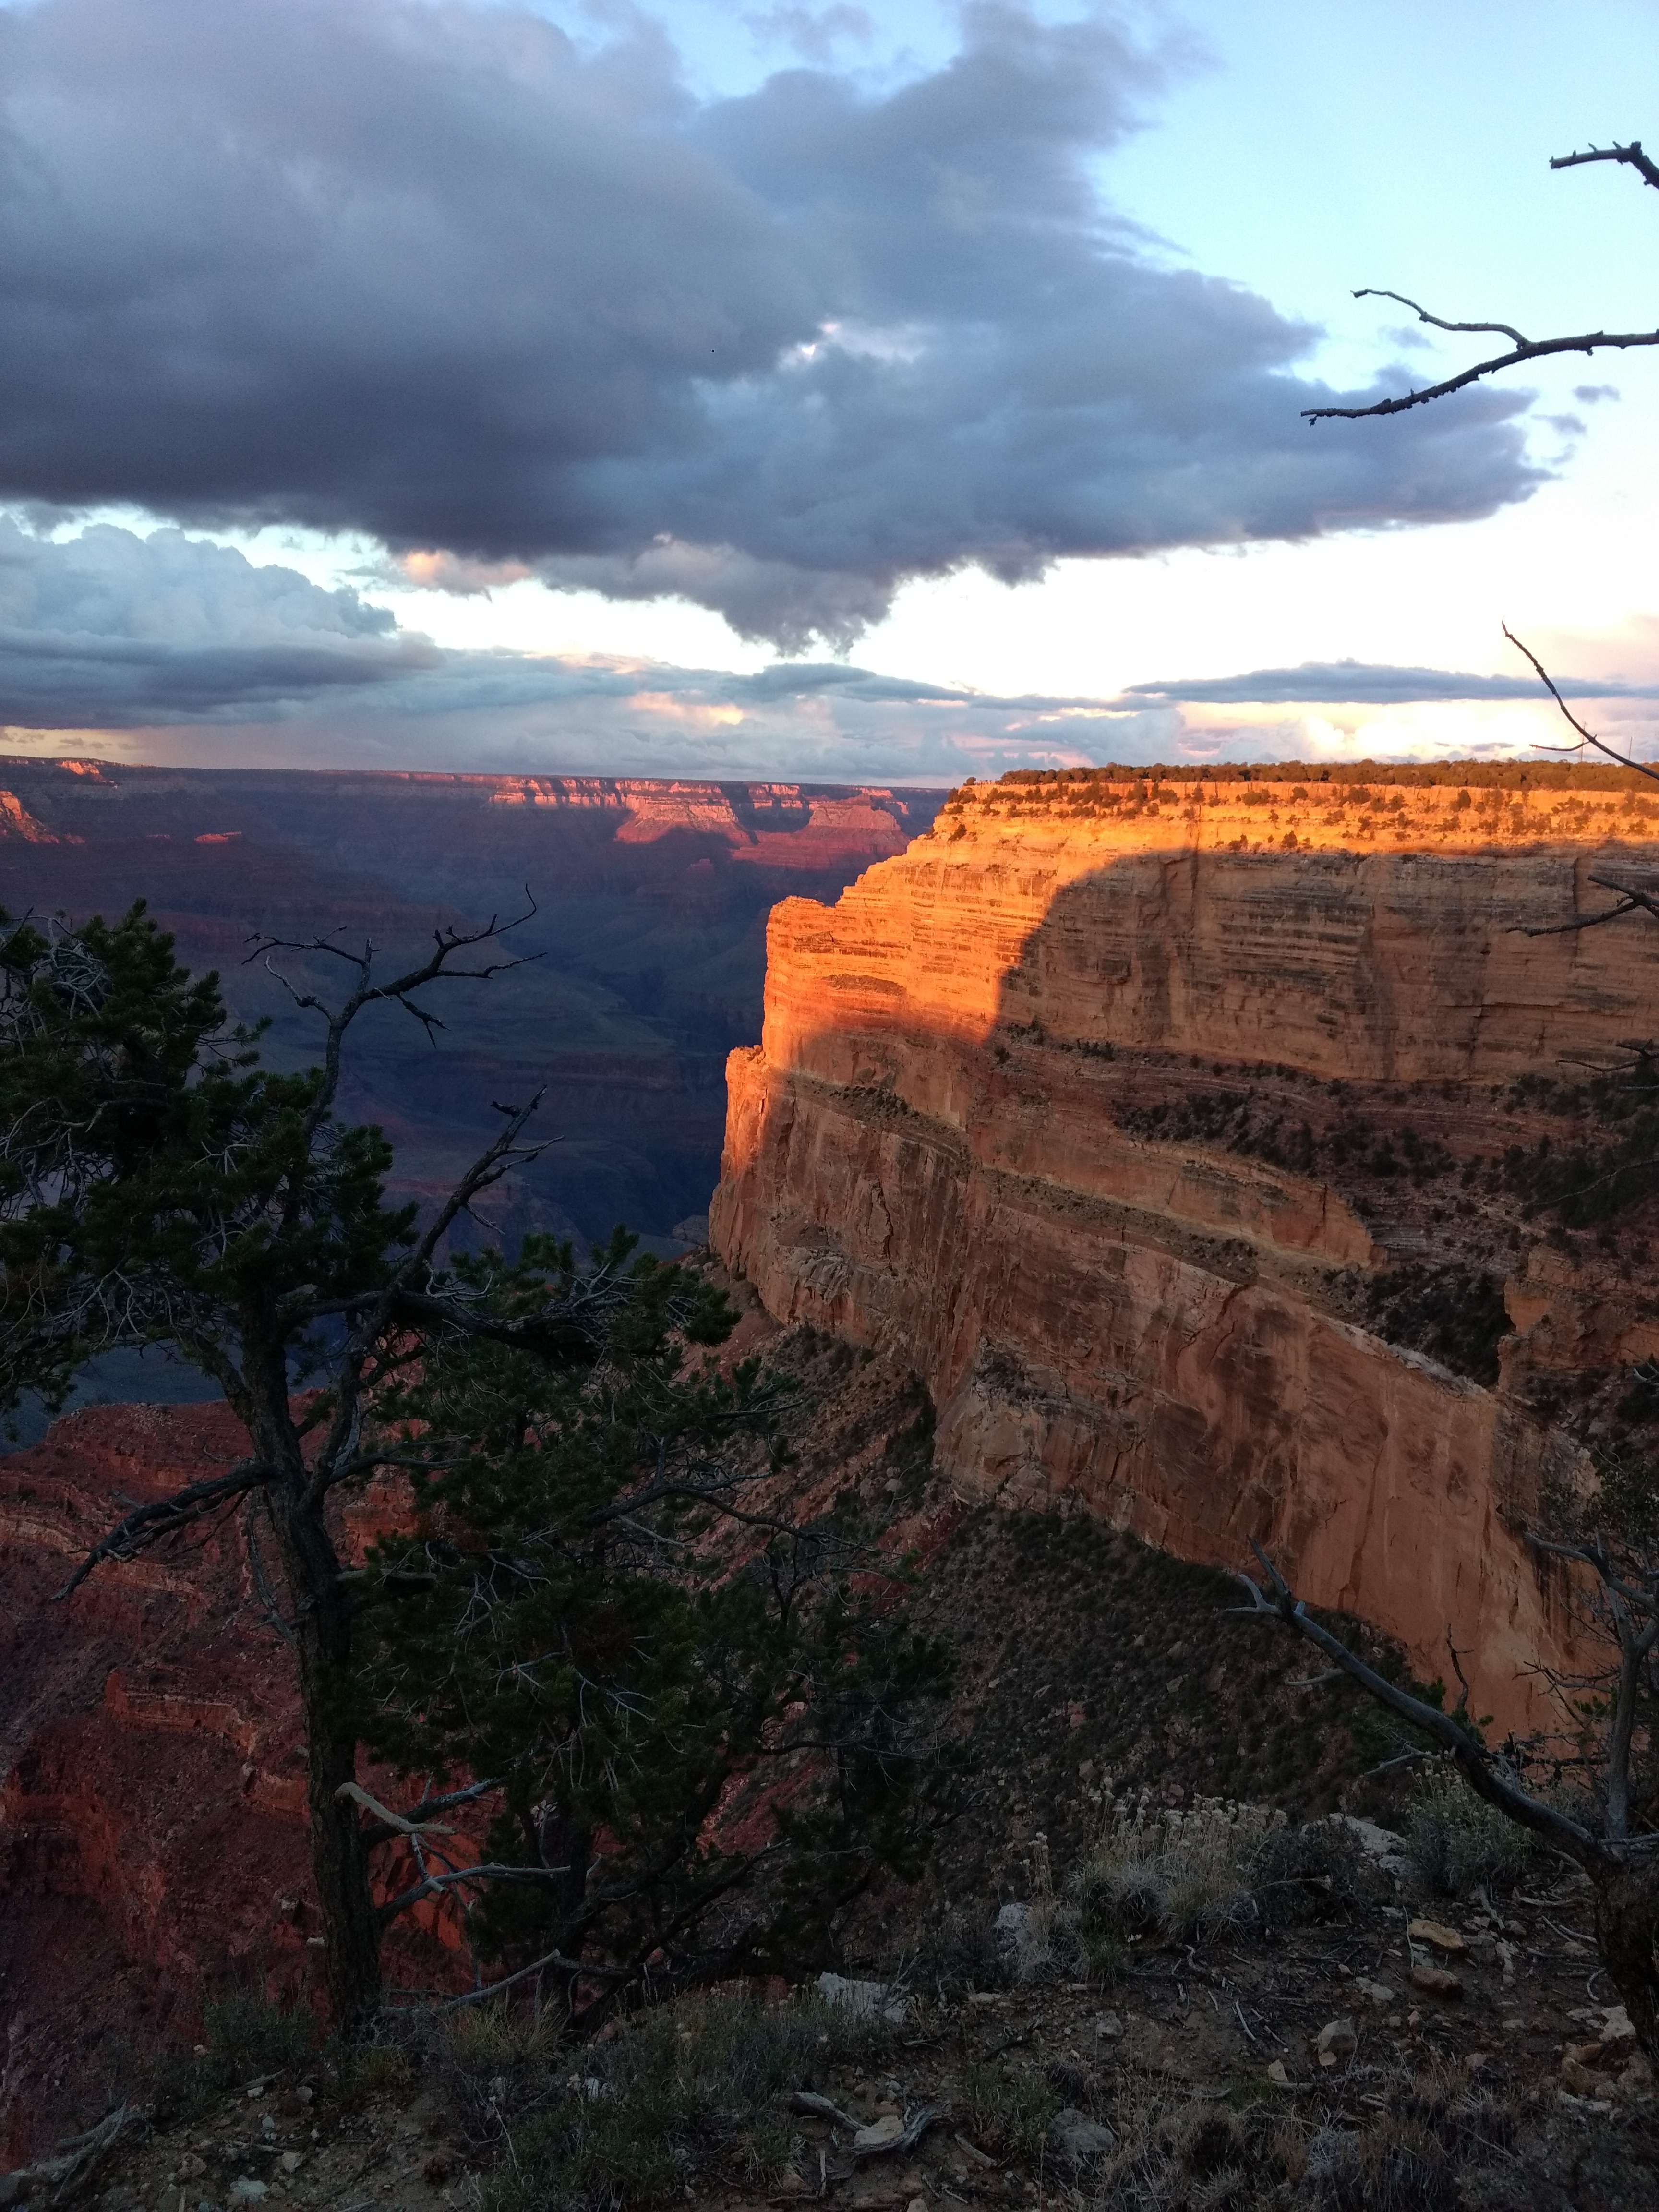 Sunset at Grand Canyon – Yikes!